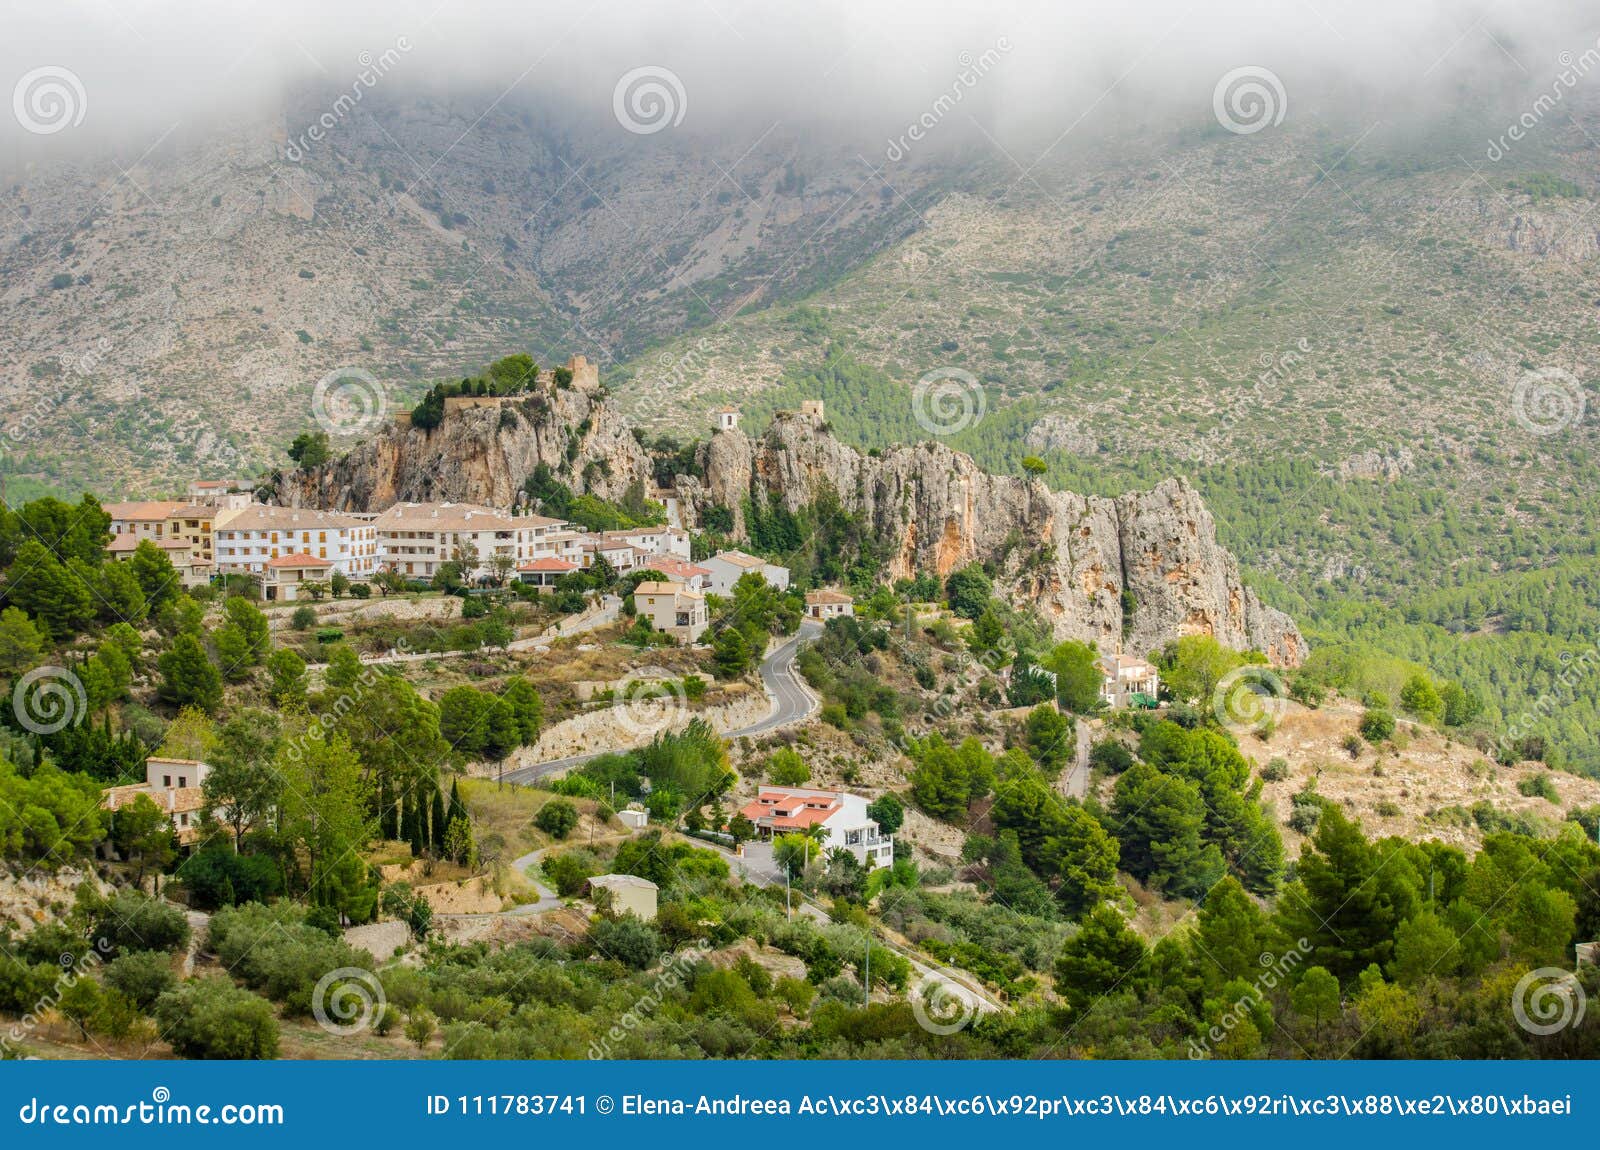 guadalest castle, costa blanca, province of alicante, comunidad valenciana, spain europe